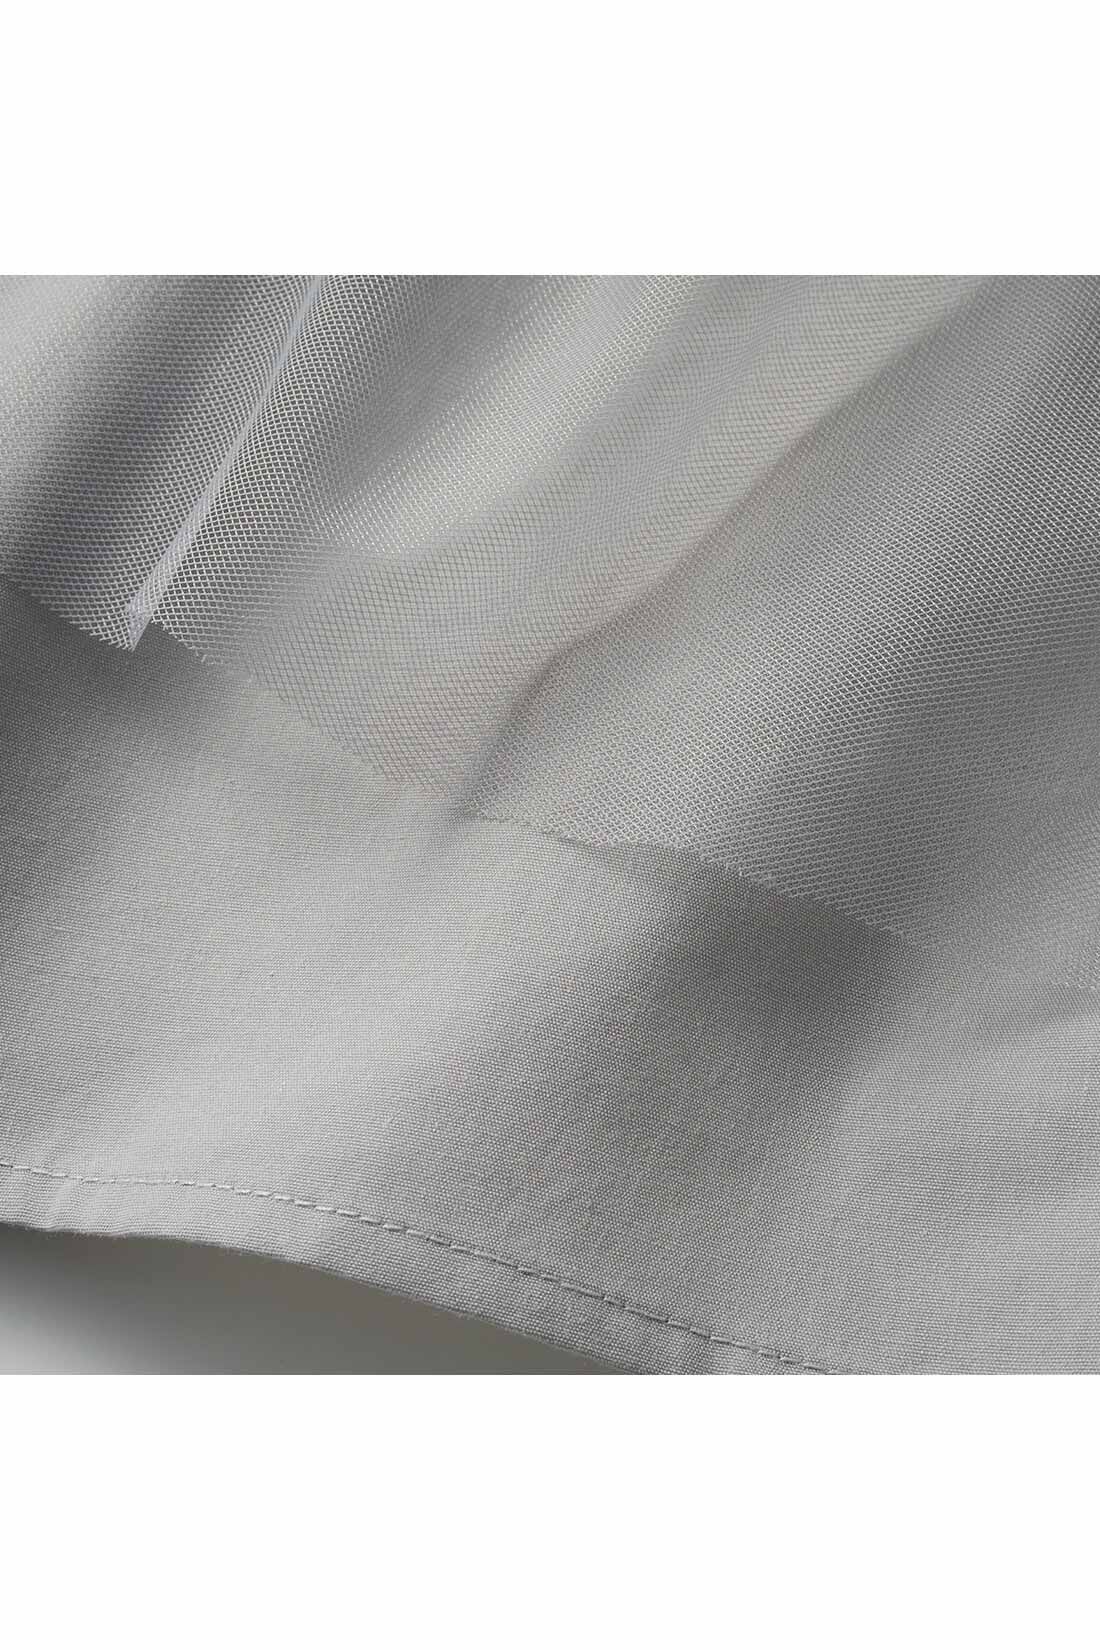 Live in  comfort|リブ イン コンフォート いつものコーデを格上げする チュールティアードスカート 〈ライトグレー〉|ほどよく張りのある繊細なチュールに、透け感が気になりにくい布はく素材の裏地を重ねました。